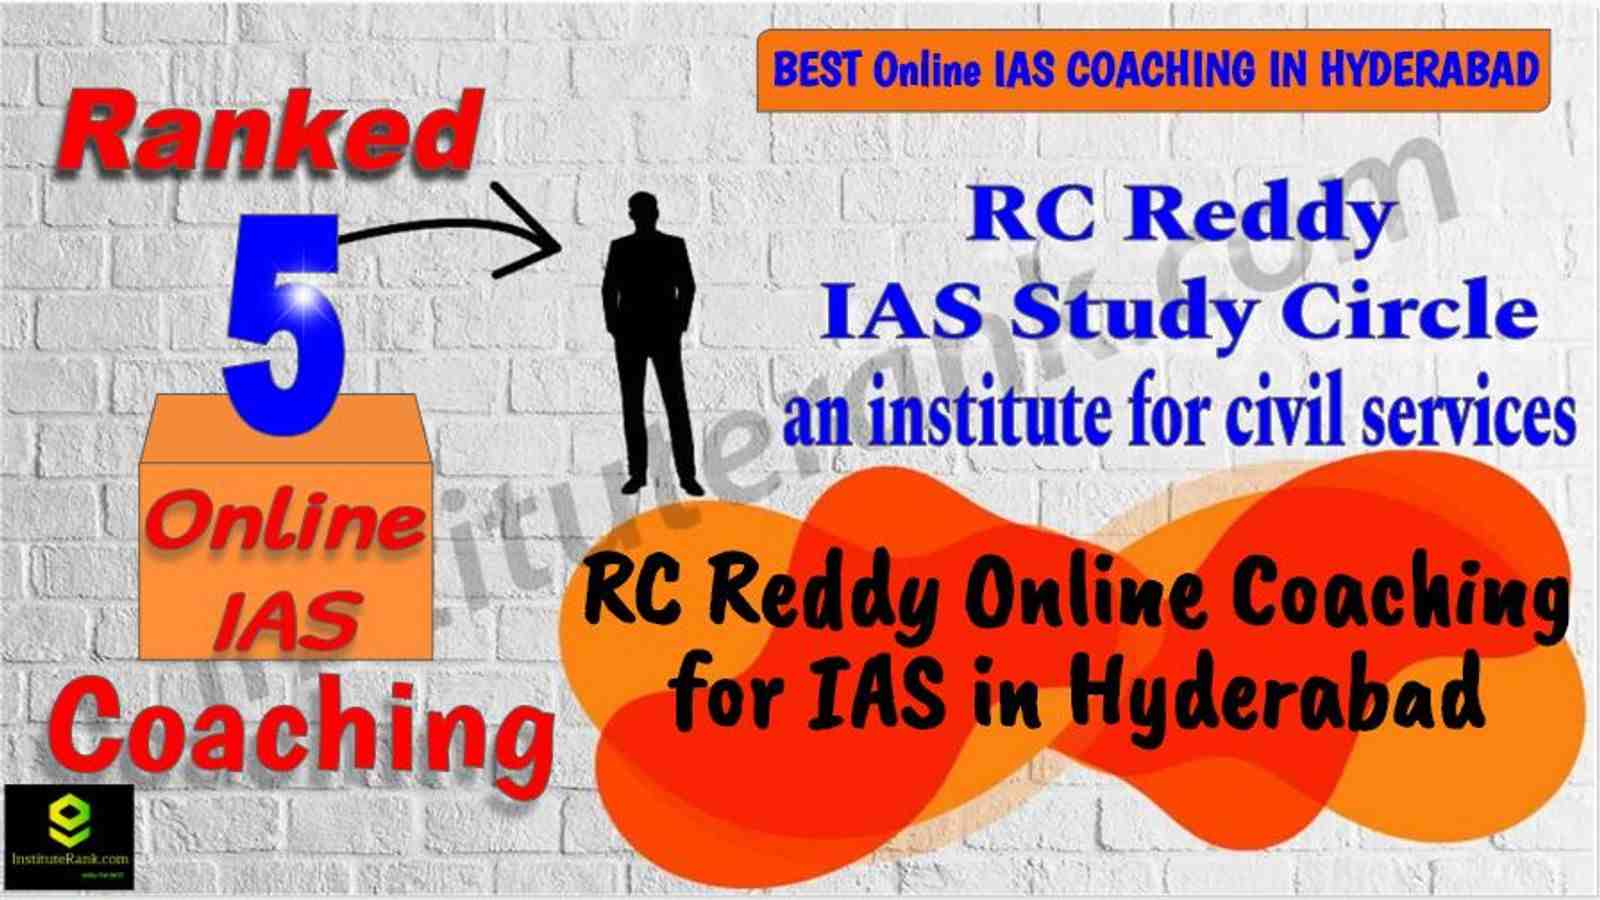 Best Online IAS Coaching in Hyderabad